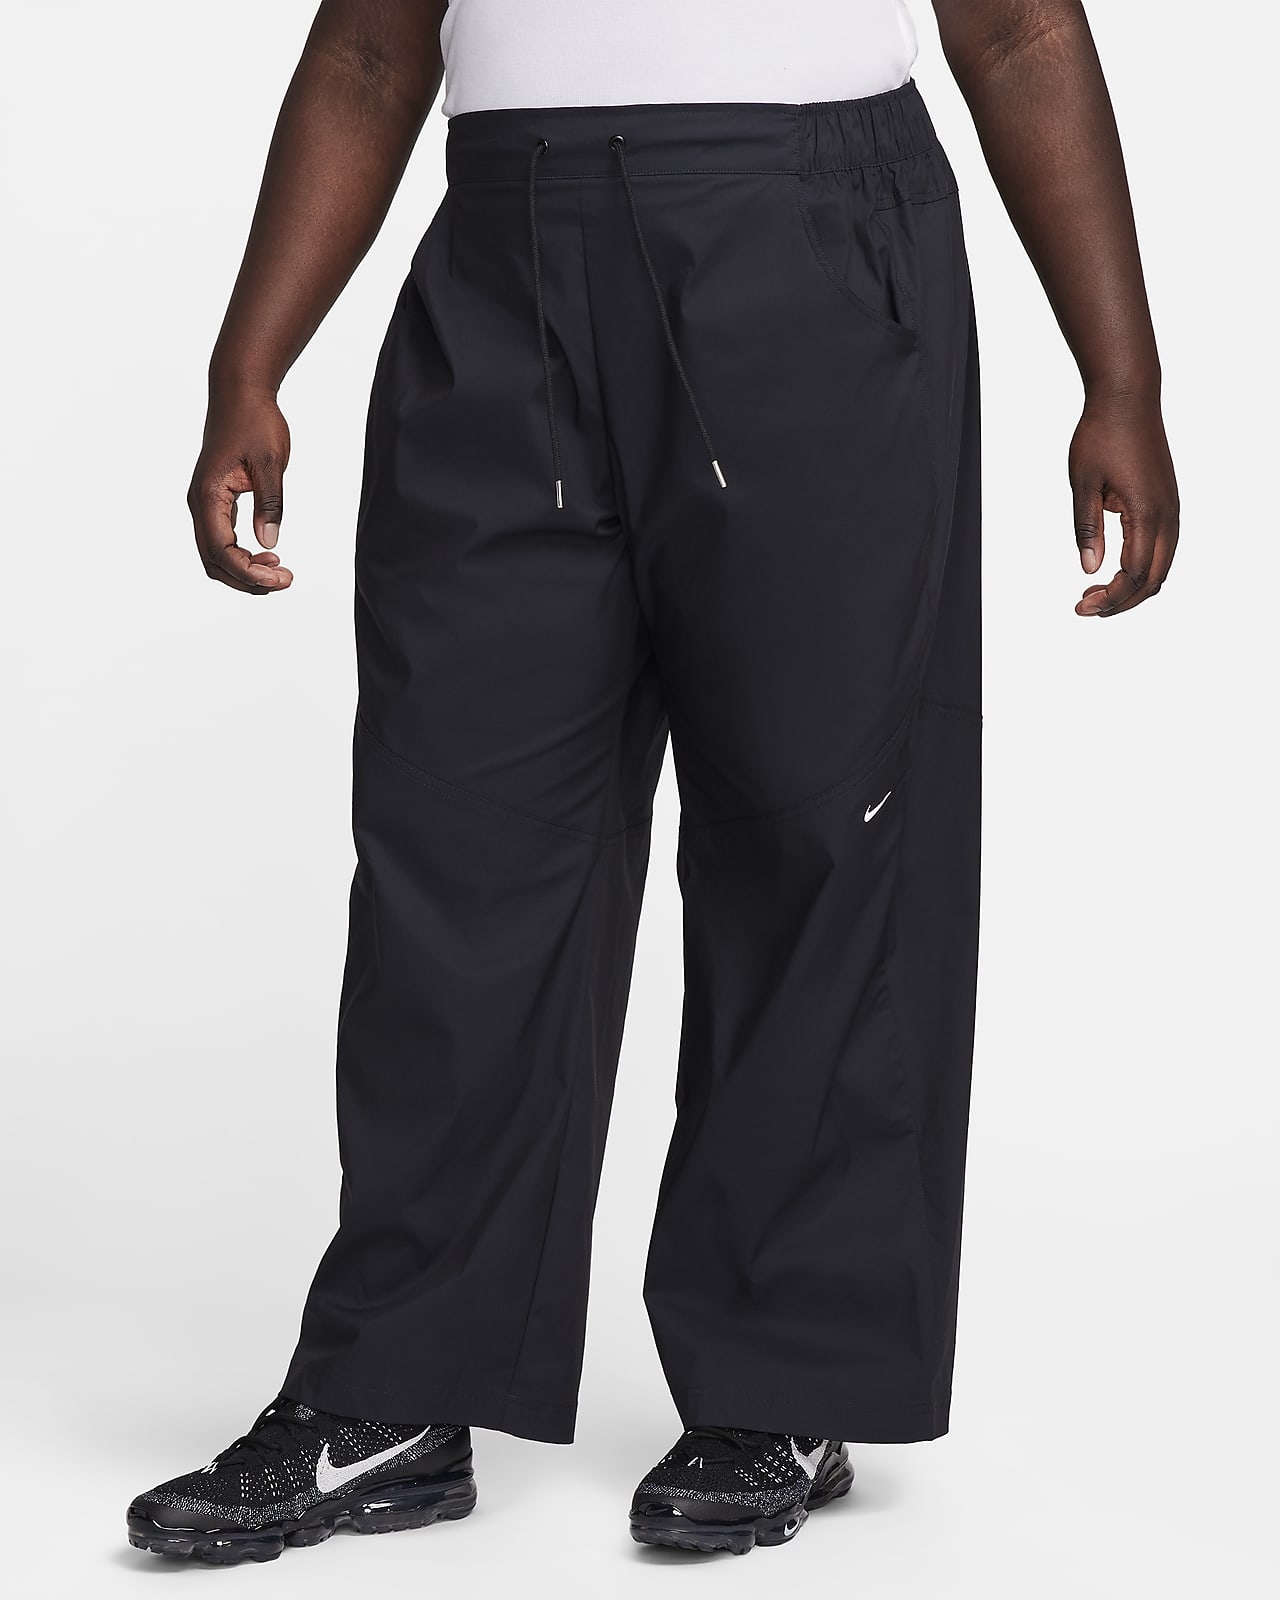 Nike Sportswear Essential Pantalons de cintura alta i teixit Woven (Talles grans) - Dona